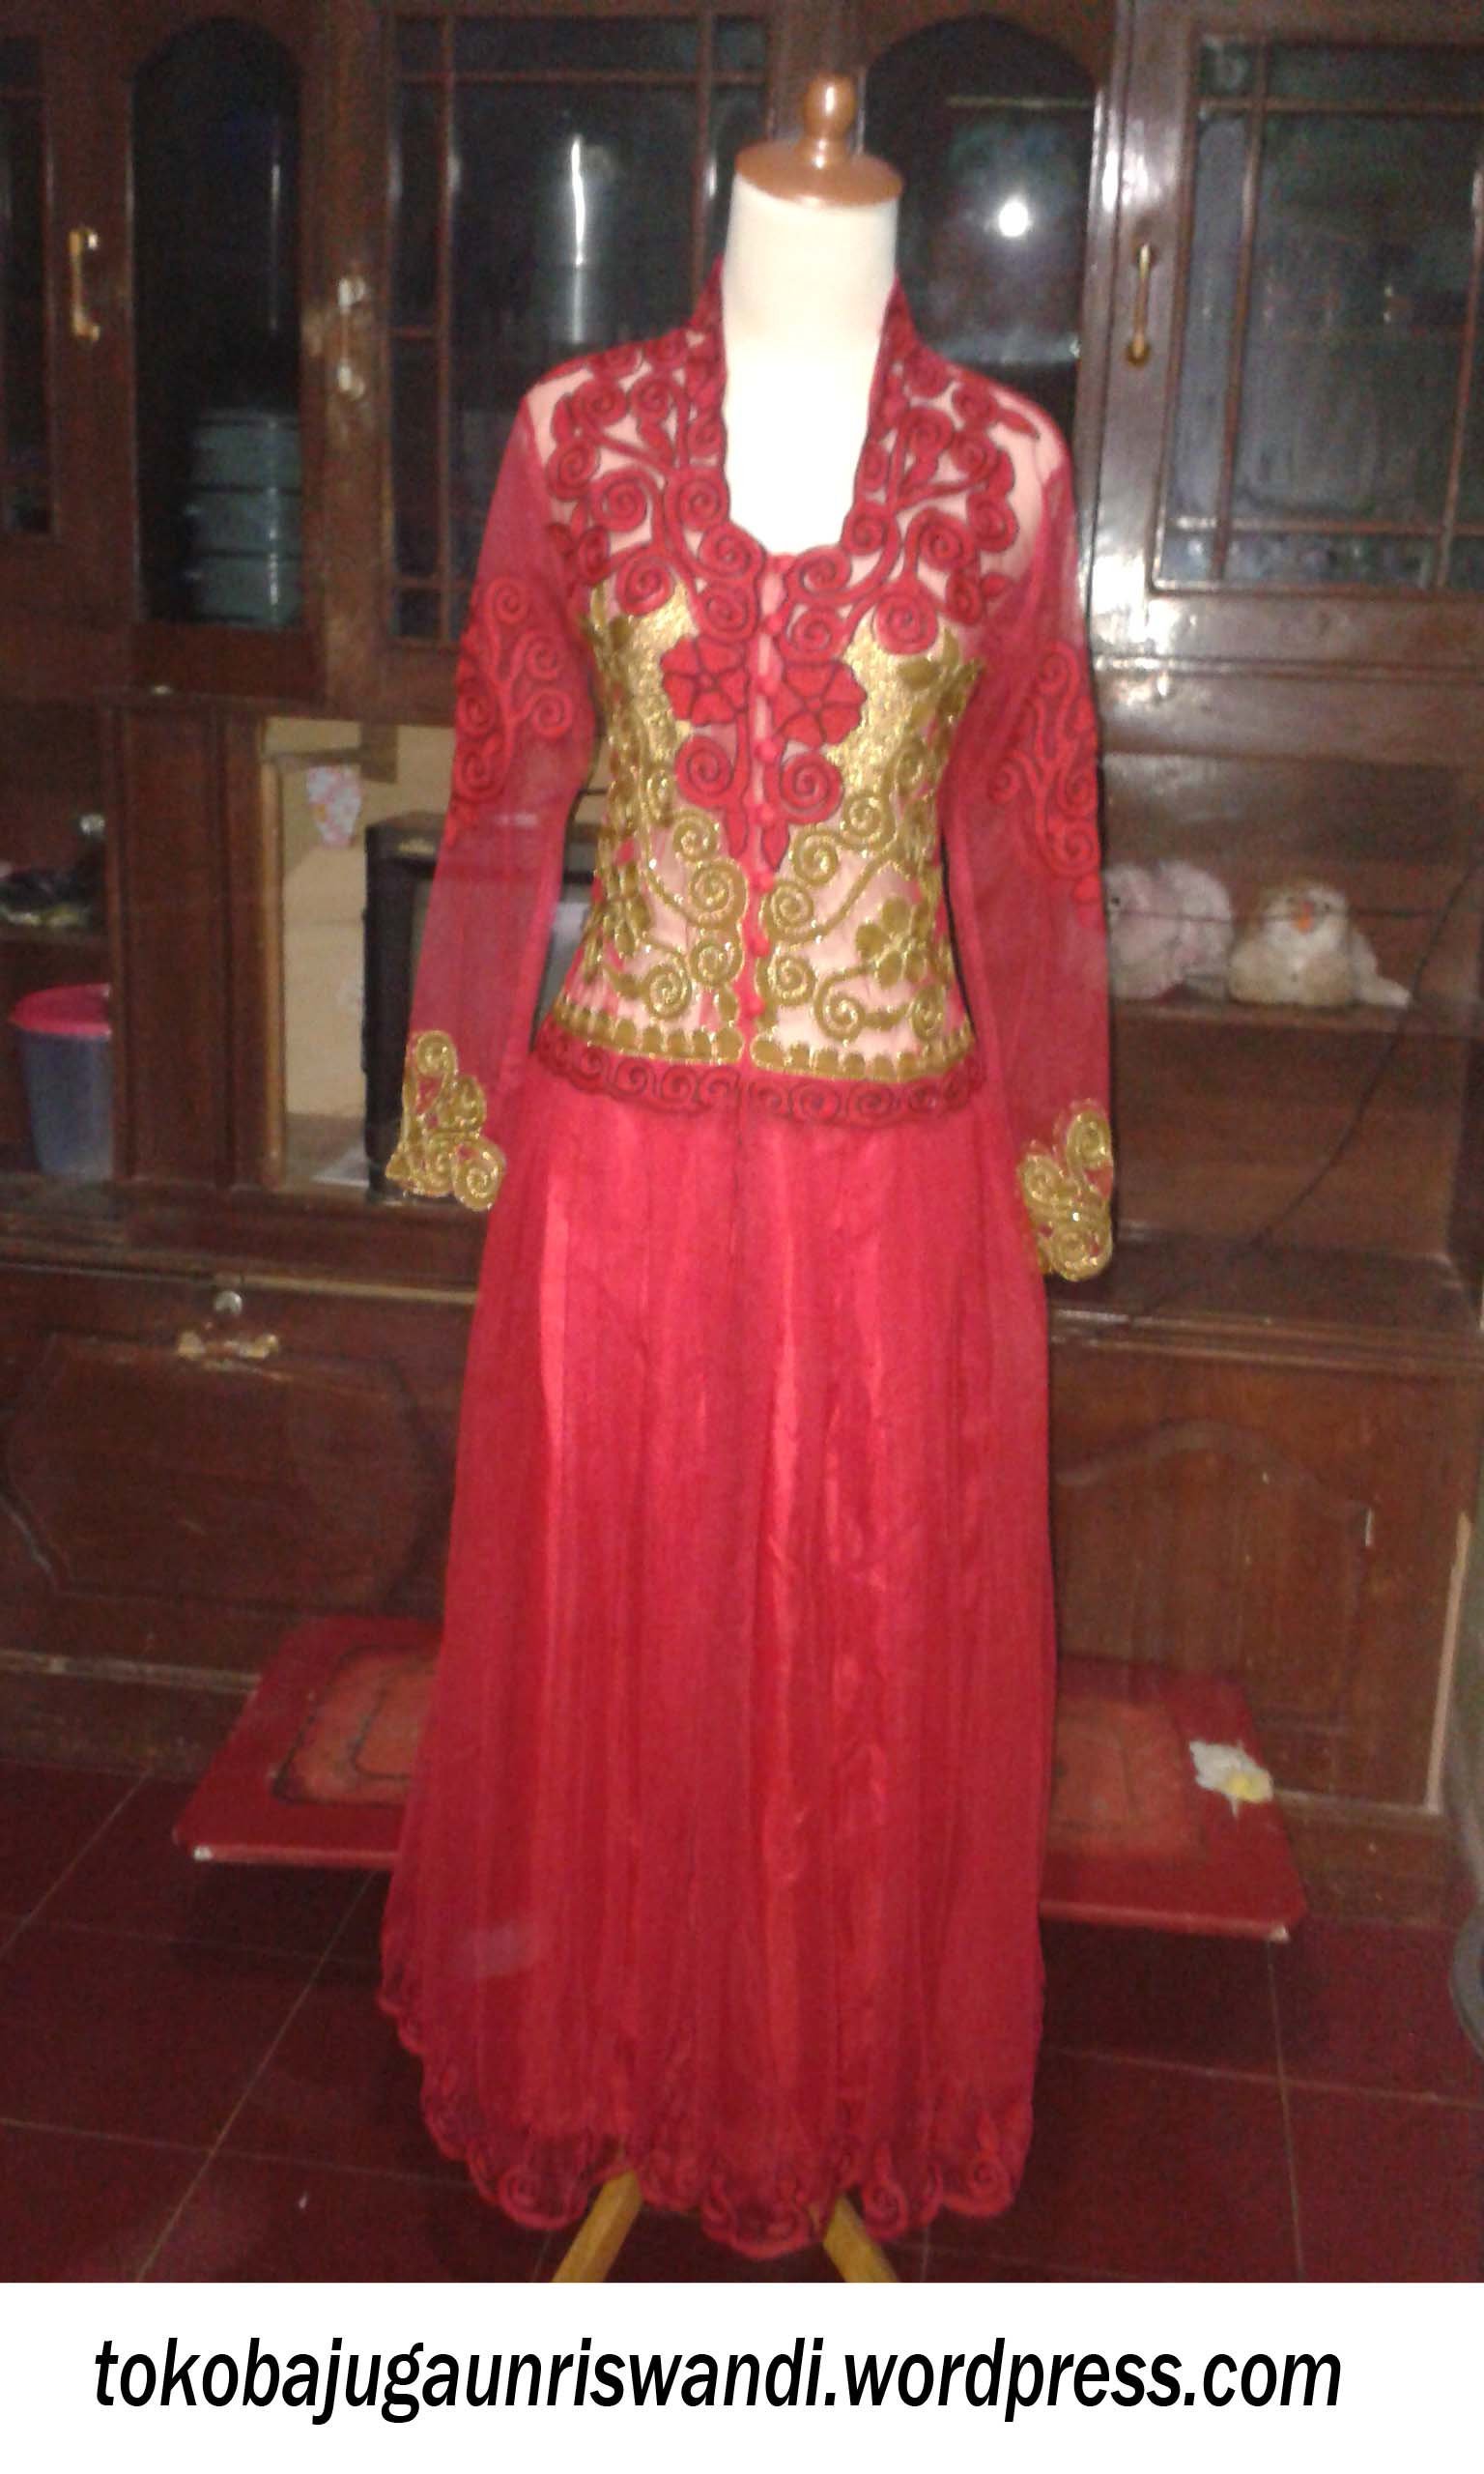 Baju Gaun Gamis Warna Merah  Toko Baju Gaun Dan Kebaya